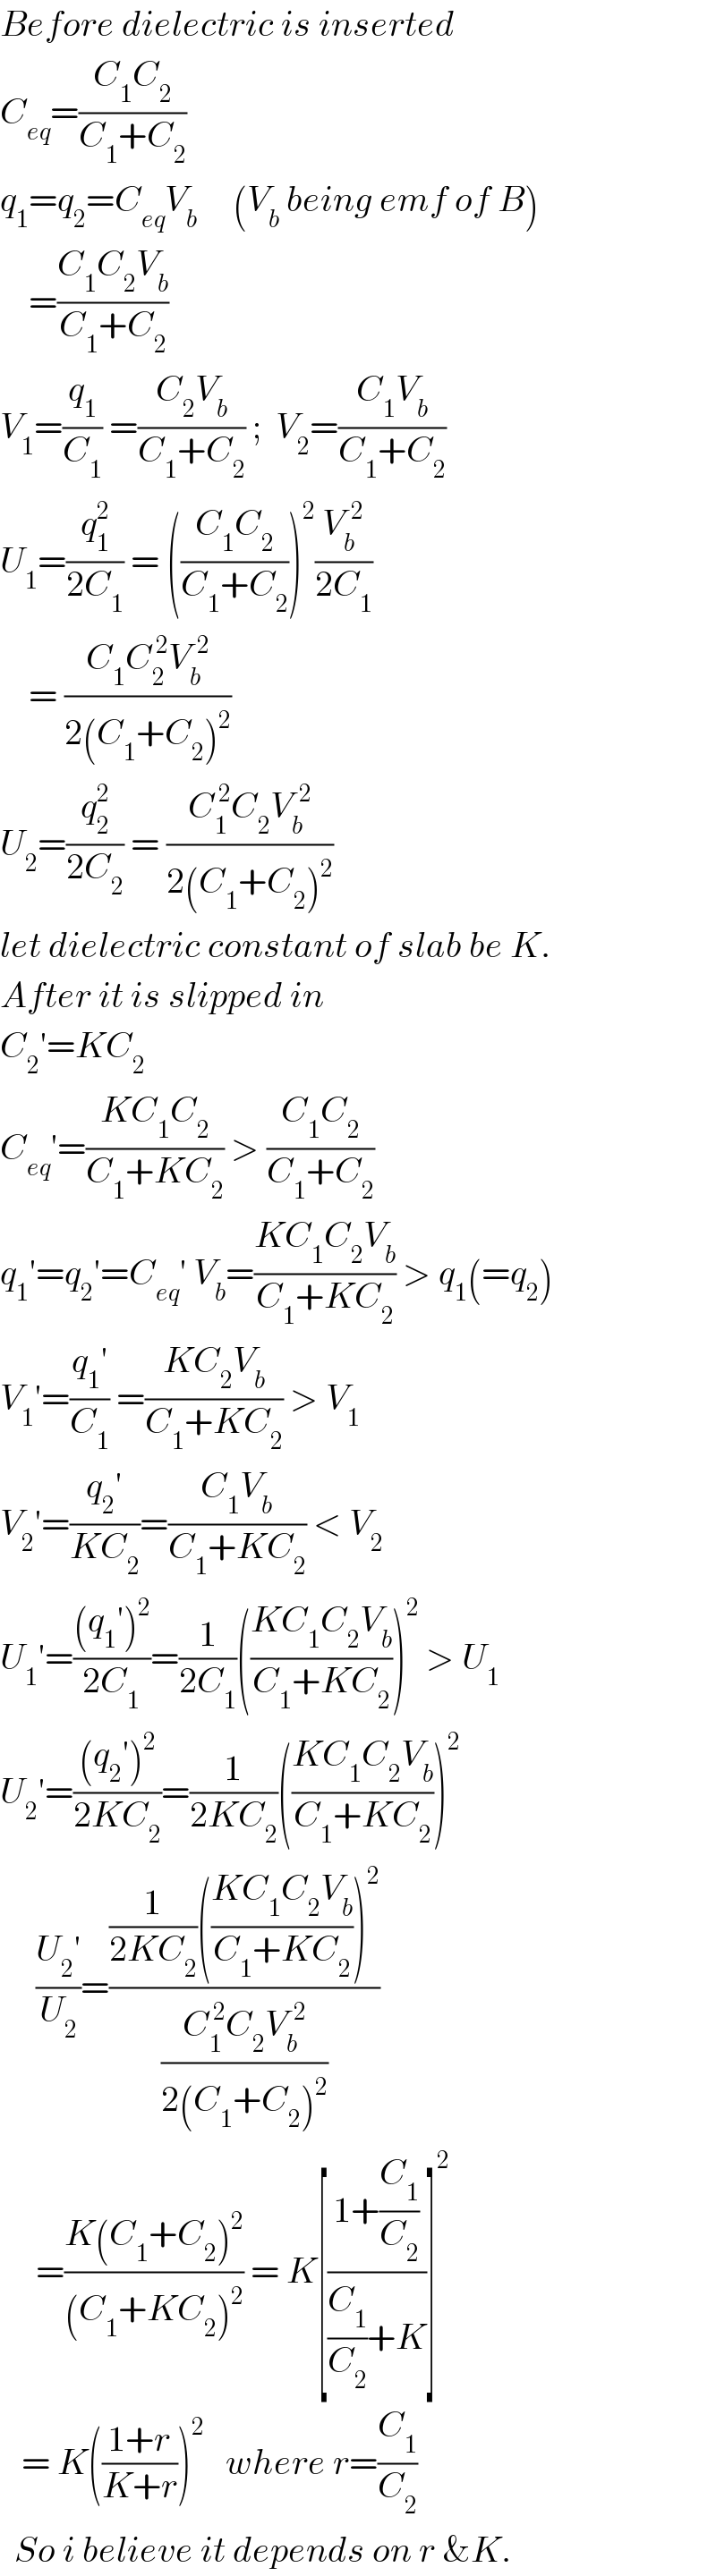 Before dielectric is inserted  C_(eq) =((C_1 C_2 )/(C_1 +C_2 ))  q_1 =q_2 =C_(eq) V_b      (V_b  being emf of B)      =((C_1 C_2 V_b )/(C_1 +C_2 ))  V_1 =(q_1 /C_1 ) =((C_2 V_b )/(C_1 +C_2 )) ;  V_2 =((C_1 V_b )/(C_1 +C_2 ))  U_1 =(q_1 ^2 /(2C_1 )) = (((C_1 C_2 )/(C_1 +C_2 )))^2 (V_b ^(  2) /(2C_1 ))      = ((C_1 C_2 ^( 2) V_b ^(  2) )/(2(C_1 +C_2 )^2 ))  U_2 =(q_2 ^2 /(2C_2 )) = ((C_1 ^( 2) C_2 ^  V_b ^(  2) )/(2(C_1 +C_2 )^2 ))  let dielectric constant of slab be K.  After it is slipped in  C_2 ′=KC_2   C_(eq) ′=((KC_1 C_2 )/(C_1 +KC_2 )) > ((C_1 C_2 )/(C_1 +C_2 ))  q_1 ′=q_2 ′=C_(eq) ′ V_b =((KC_1 C_2 V_b )/(C_1 +KC_2 )) > q_1 (=q_2 )  V_1 ′=((q_1 ′)/C_1 ) =((KC_2 V_b )/(C_1 +KC_2 )) > V_1   V_2 ′=((q_2 ′)/(KC_2 ))=((C_1 V_b )/(C_1 +KC_2 )) < V_2   U_1 ′=(((q_1 ′)^2 )/(2C_1 ))=(1/(2C_1 ))(((KC_1 C_2 V_b )/(C_1 +KC_2 )))^2  > U_1   U_2 ′=(((q_2 ′)^2 )/(2KC_2 ))=(1/(2KC_2 ))(((KC_1 C_2 V_b )/(C_1 +KC_2 )))^2         ((U_2 ′)/U_2 )=(((1/(2KC_2 ))(((KC_1 C_2 V_b )/(C_1 +KC_2 )))^2 )/((C_1 ^( 2) C_2 ^  V_b ^(  2) )/(2(C_1 +C_2 )^2 )))       =((K(C_1 +C_2 )^2 )/((C_1 +KC_2 )^2 )) = K[((1+(C_1 /C_2 ))/((C_1 /C_2 )+K))]^2      = K(((1+r)/(K+r)))^2    where r=(C_1 /C_2 )    So i believe it depends on r &K.  